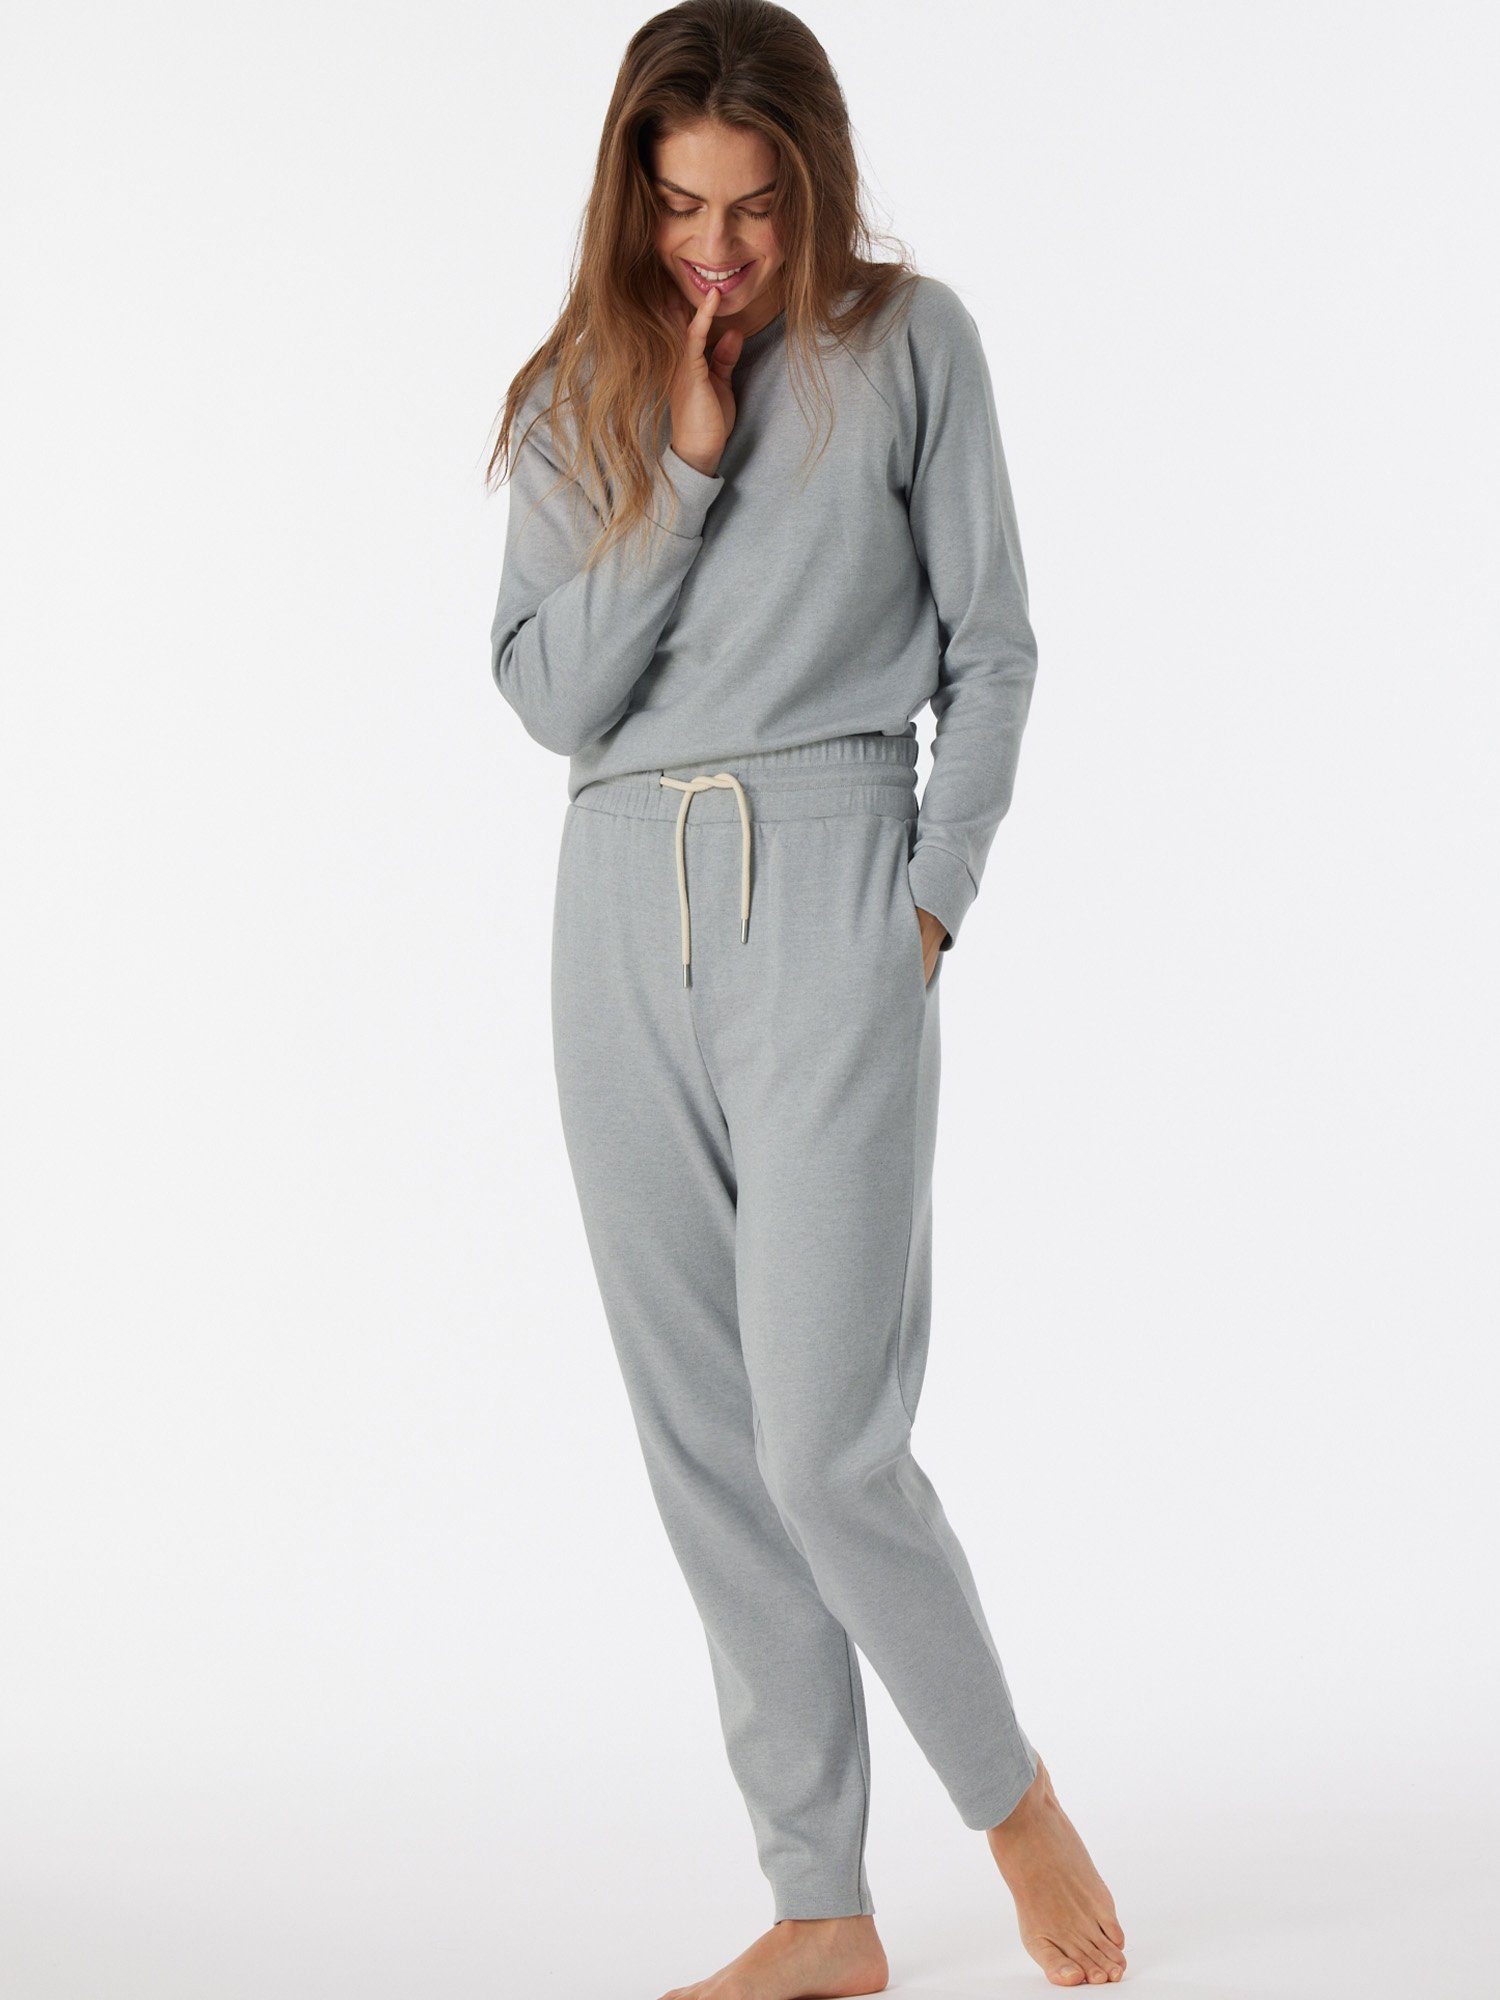 Schiesser Pyjamahose Mix grau-mel. pyjama schlaf-hose & Relax schlaf-hose